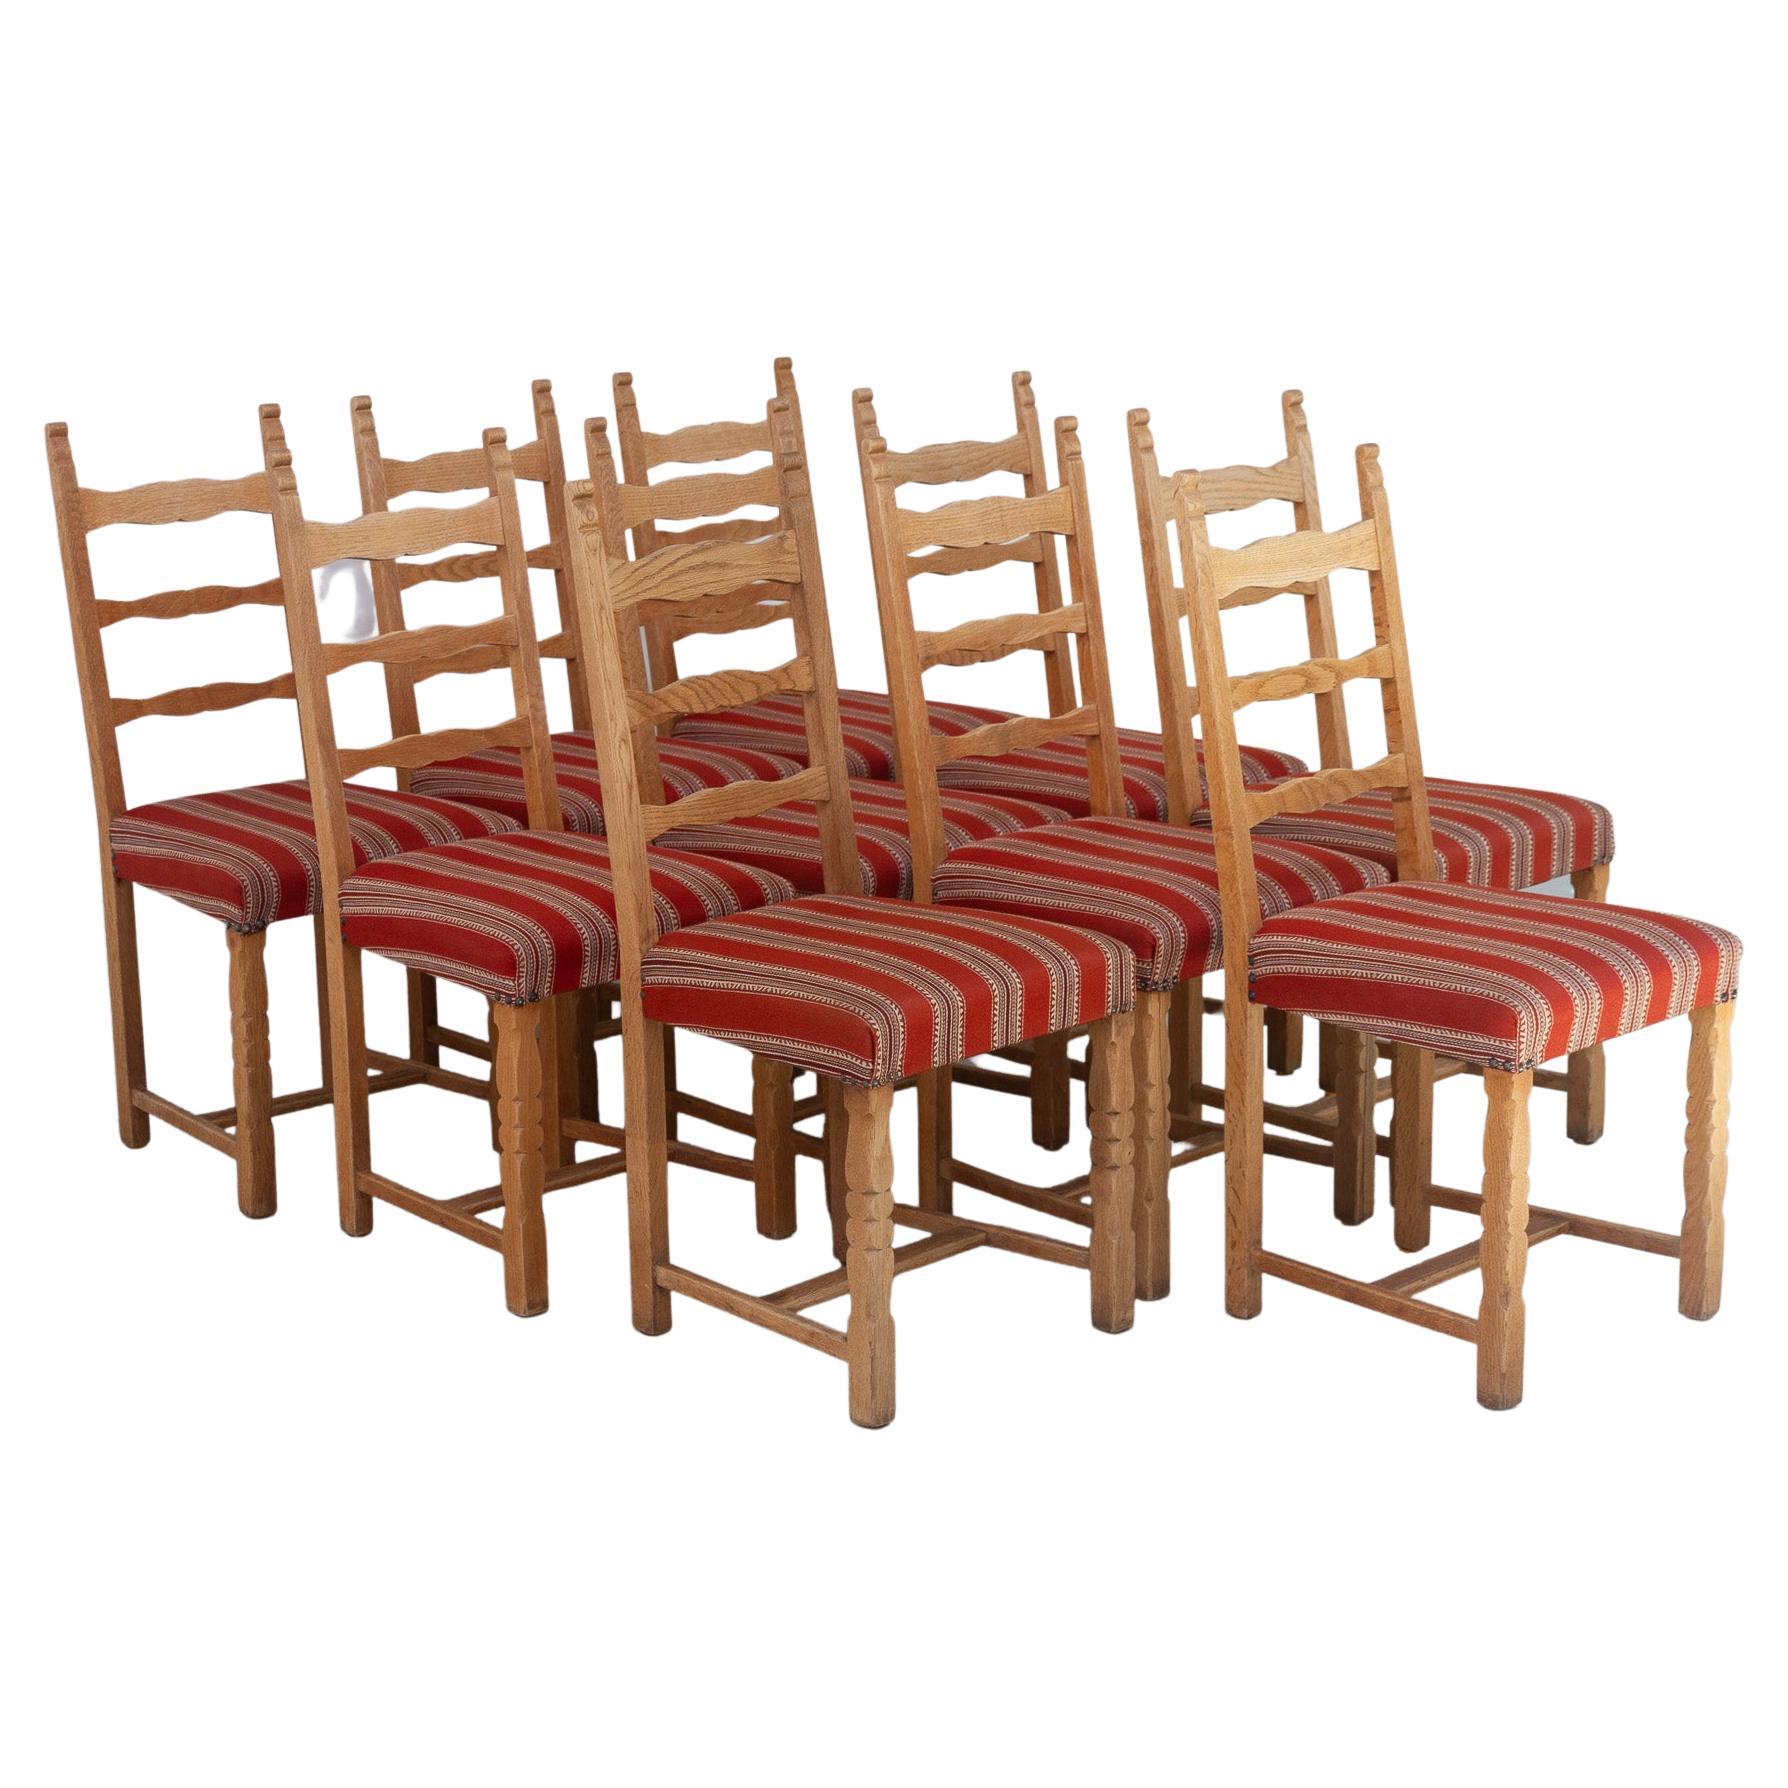 Vintage Danish Brutalist Ladder Back Oak Dining Chairs, 1960s. Set of 10. For Sale